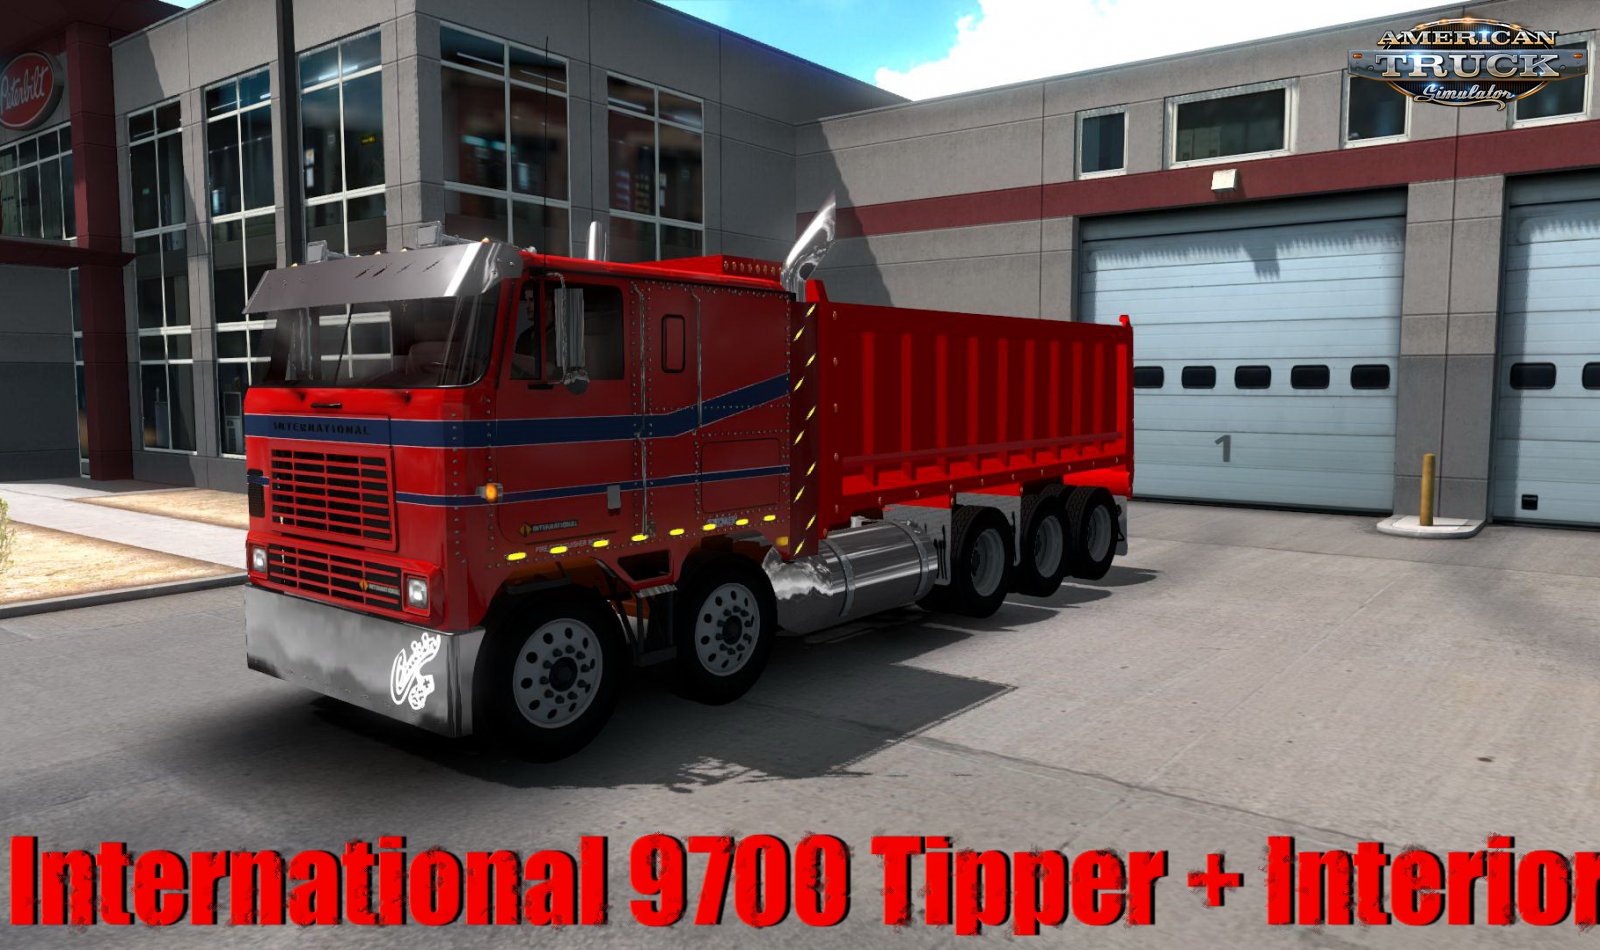 International 9700 Tipper + Interior v2.5 (1.34.x)